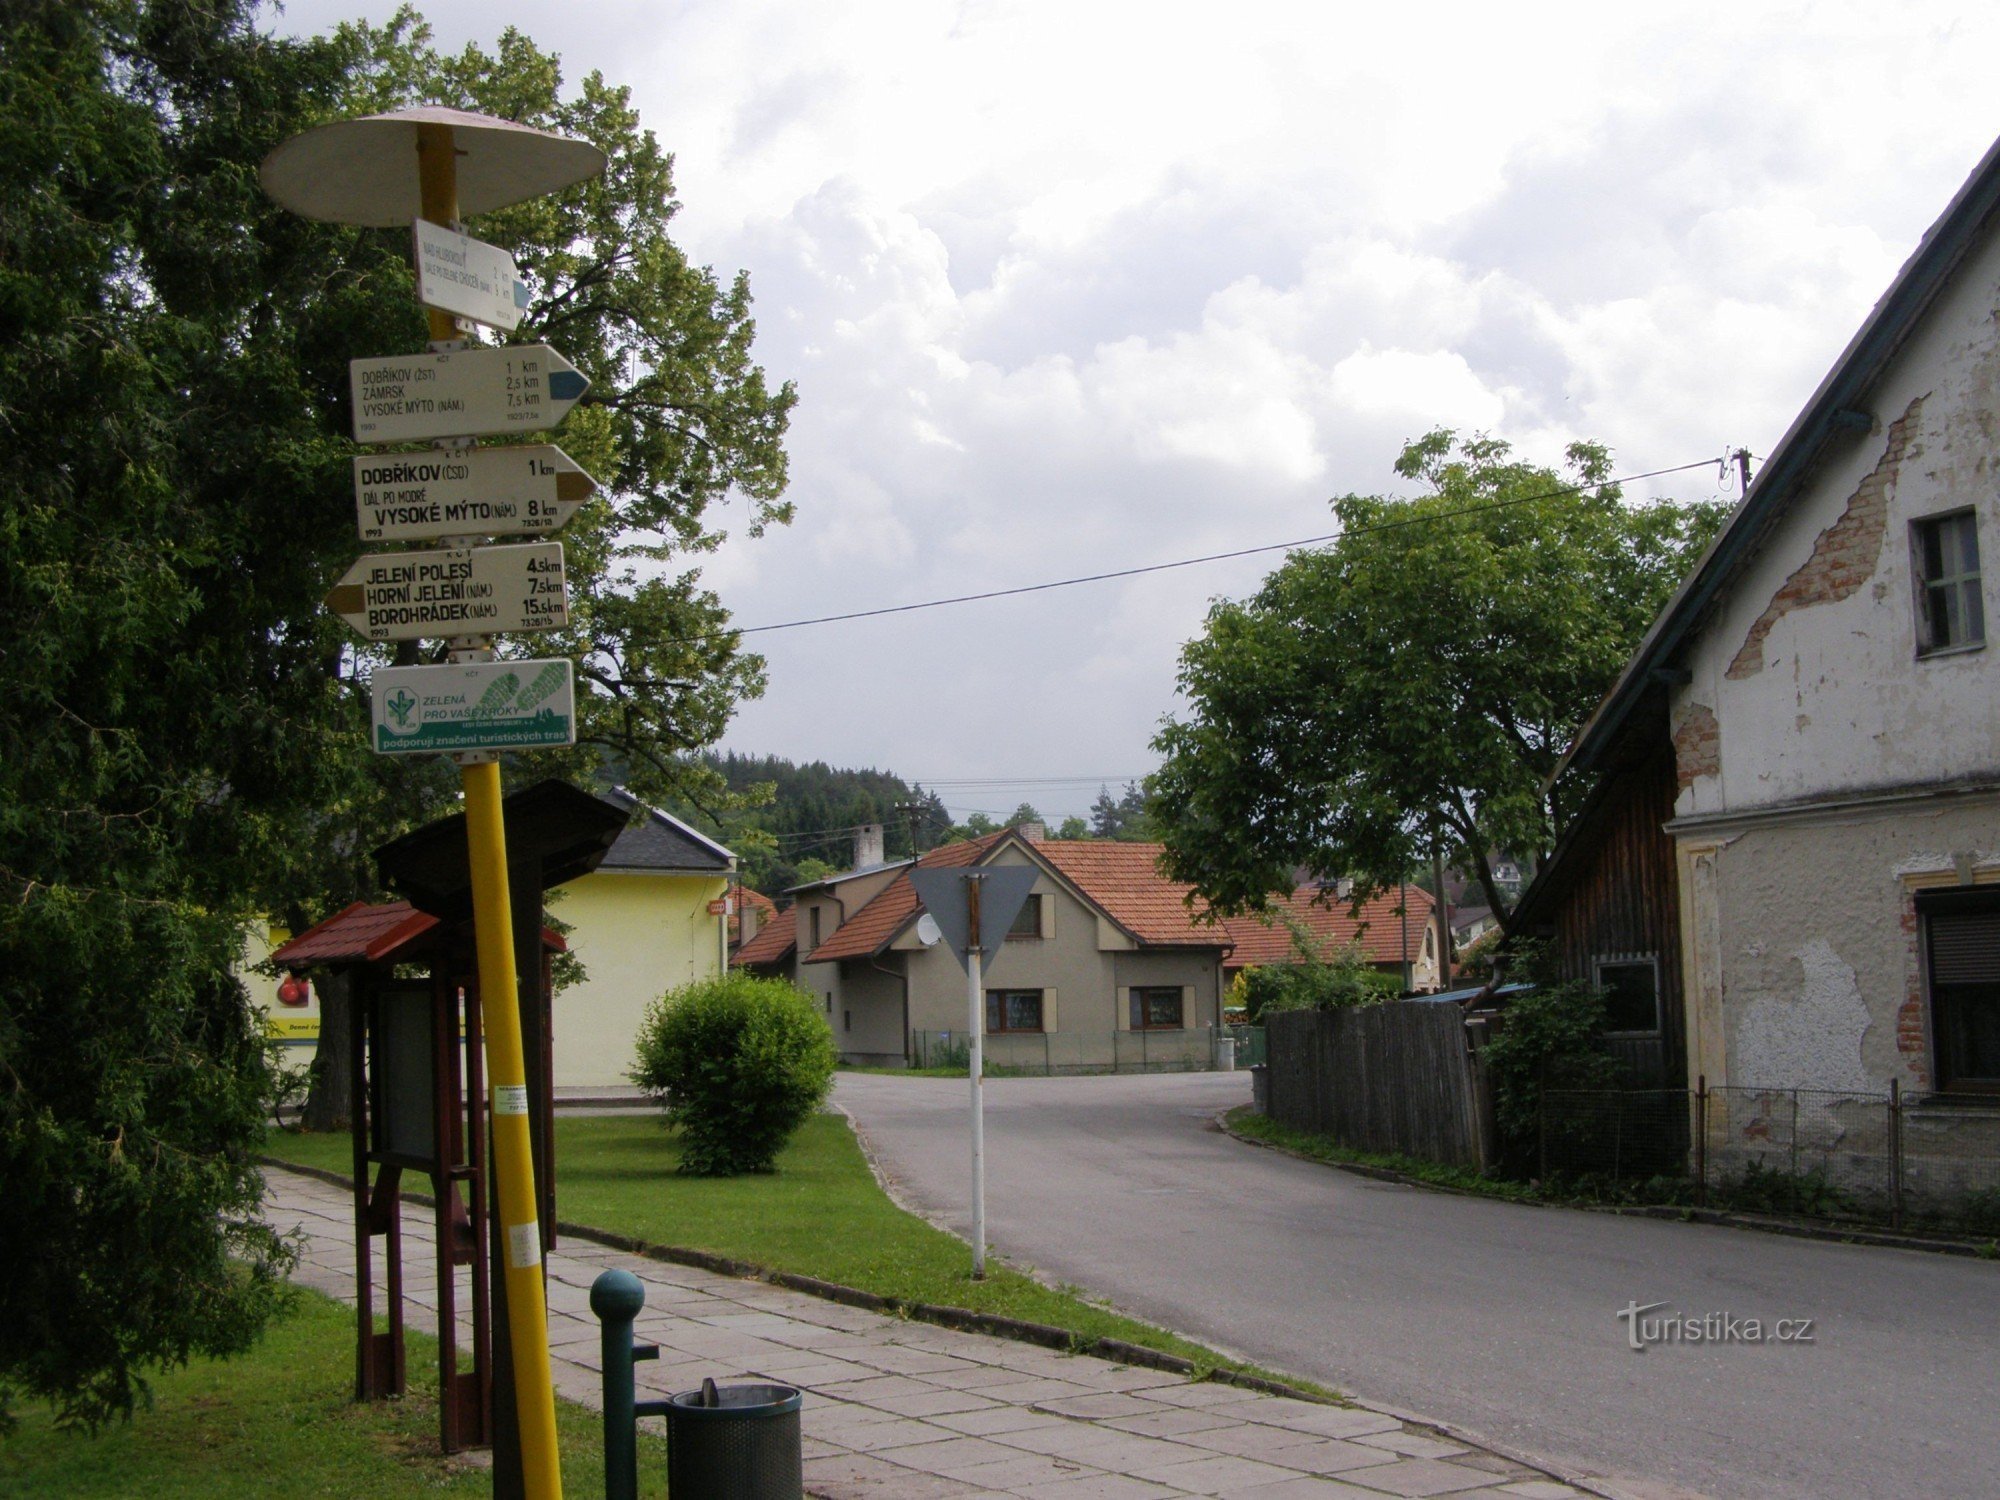 turističko raskrižje Dobříkov - selo